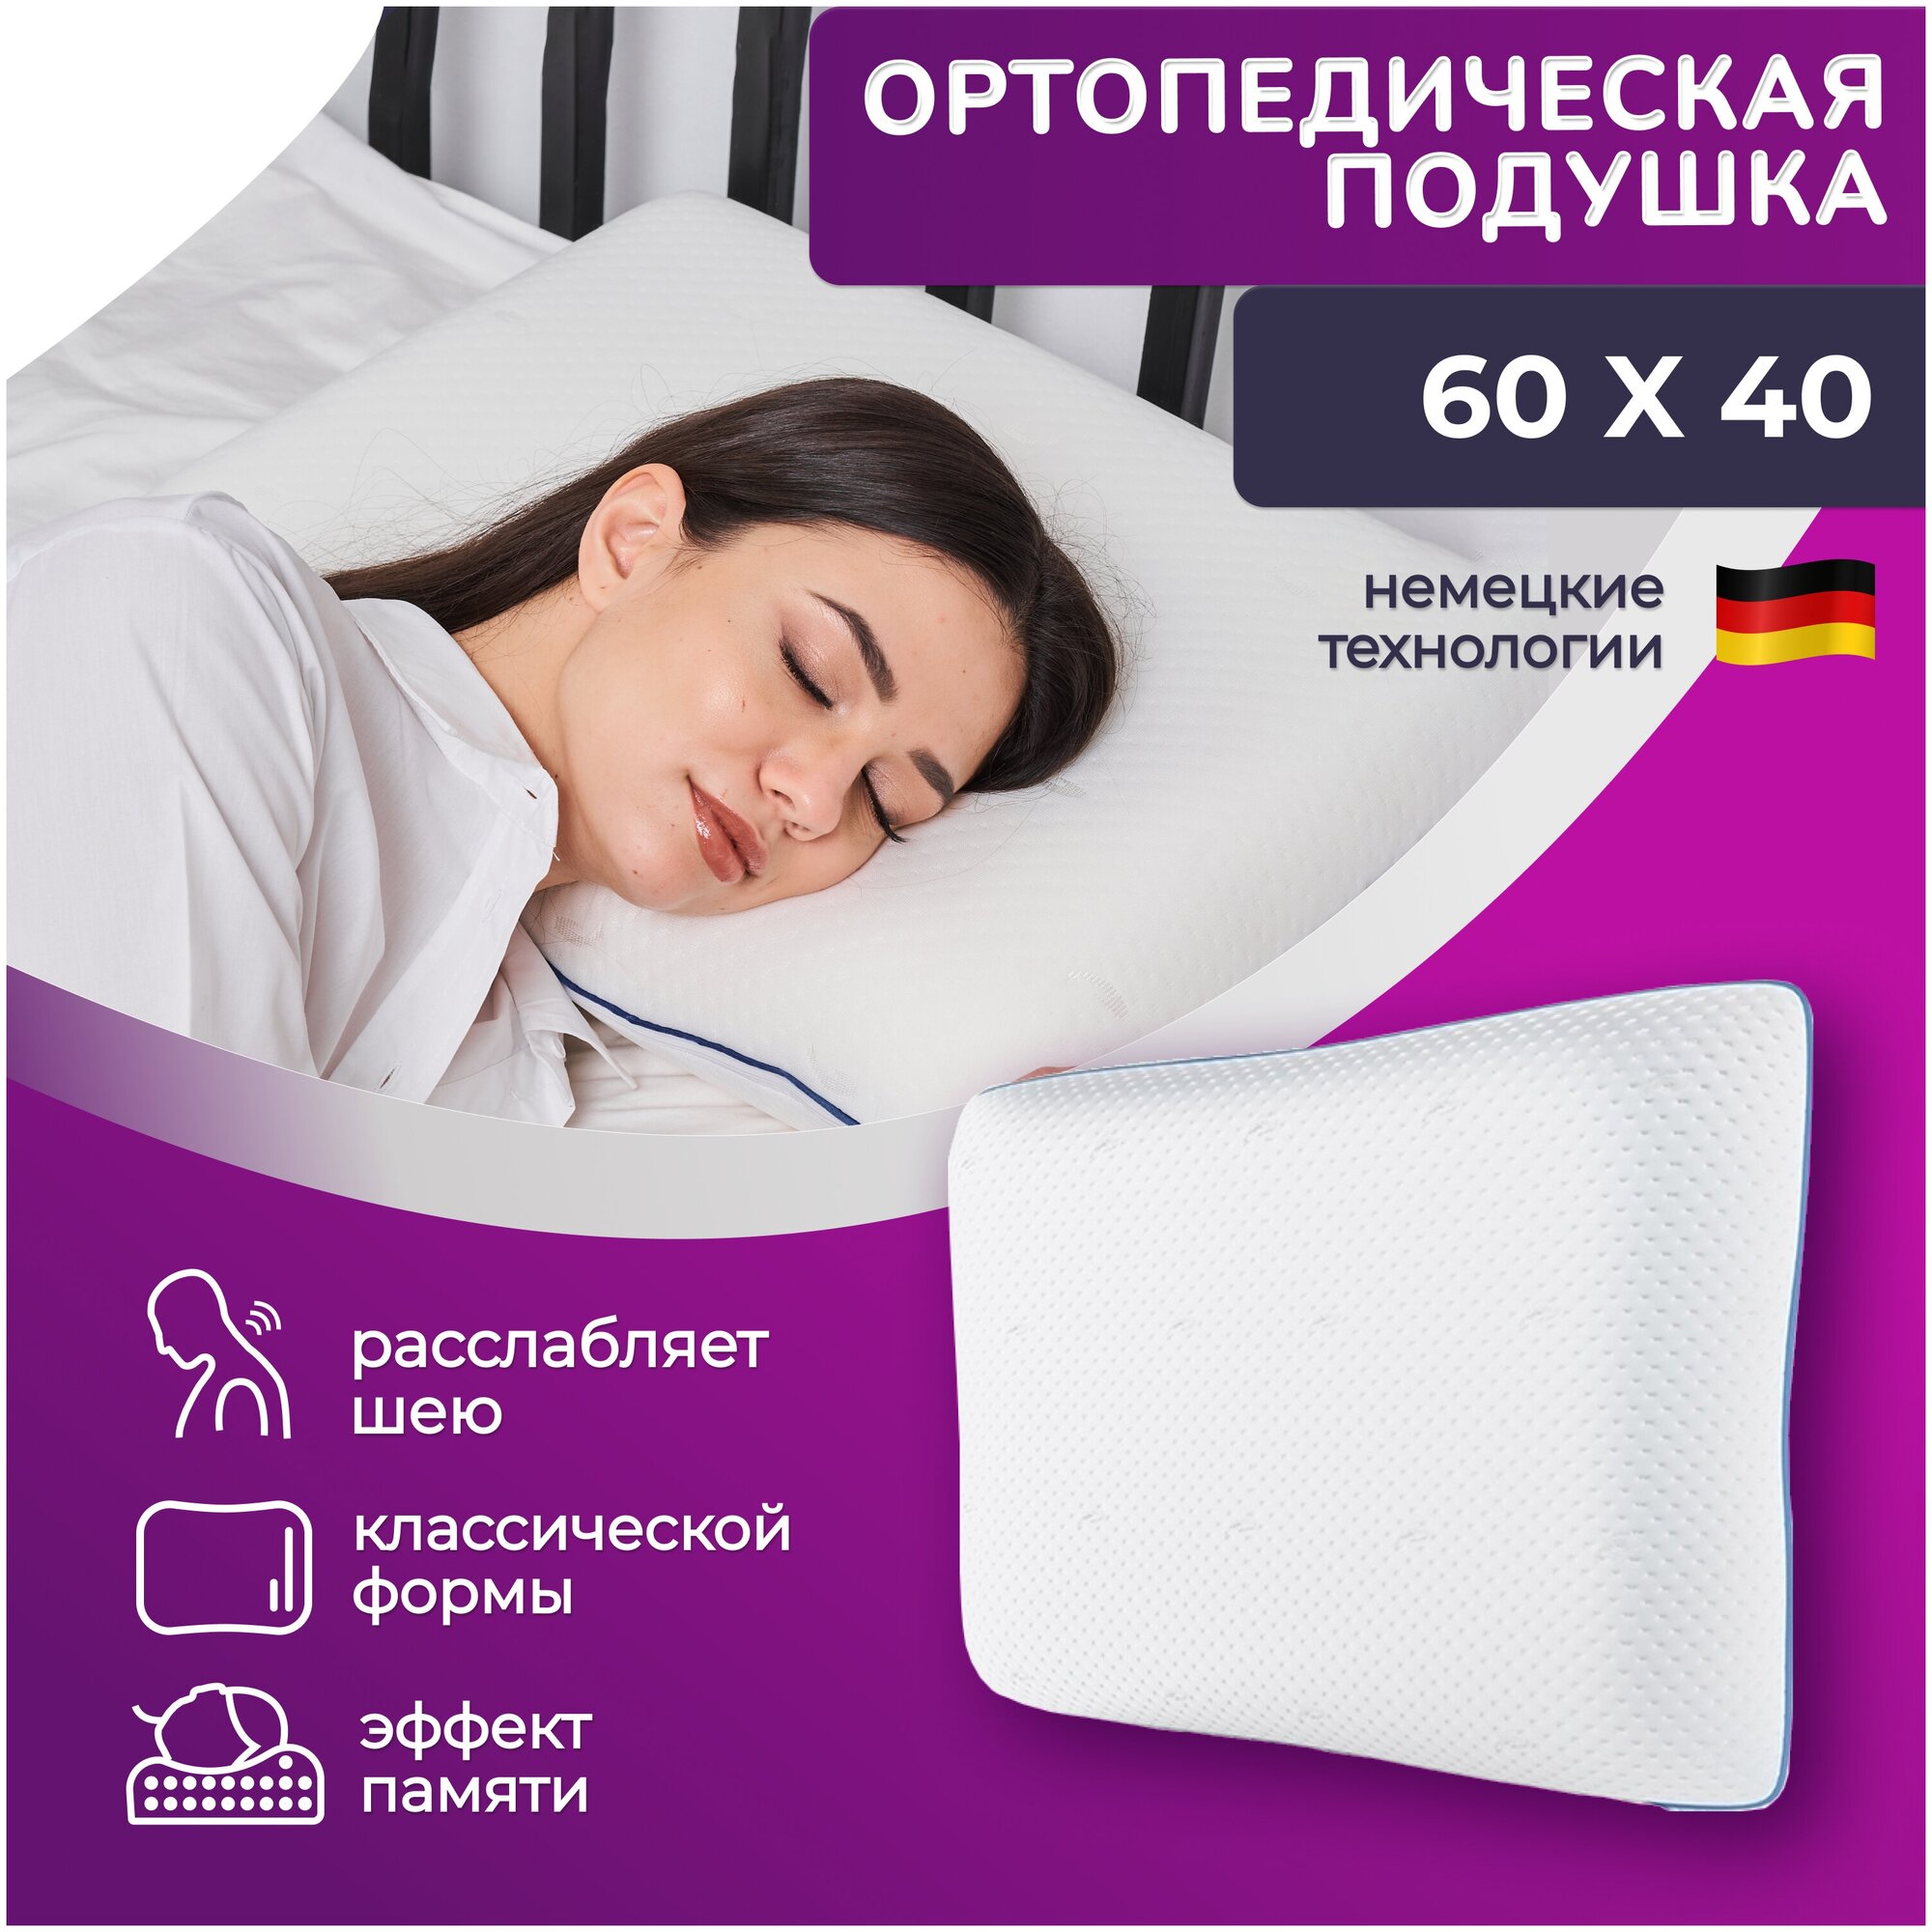 Подушка ортопедическая Wikkistyle 60х40 для сна и шеи с эффектом памяти высотой 13 см